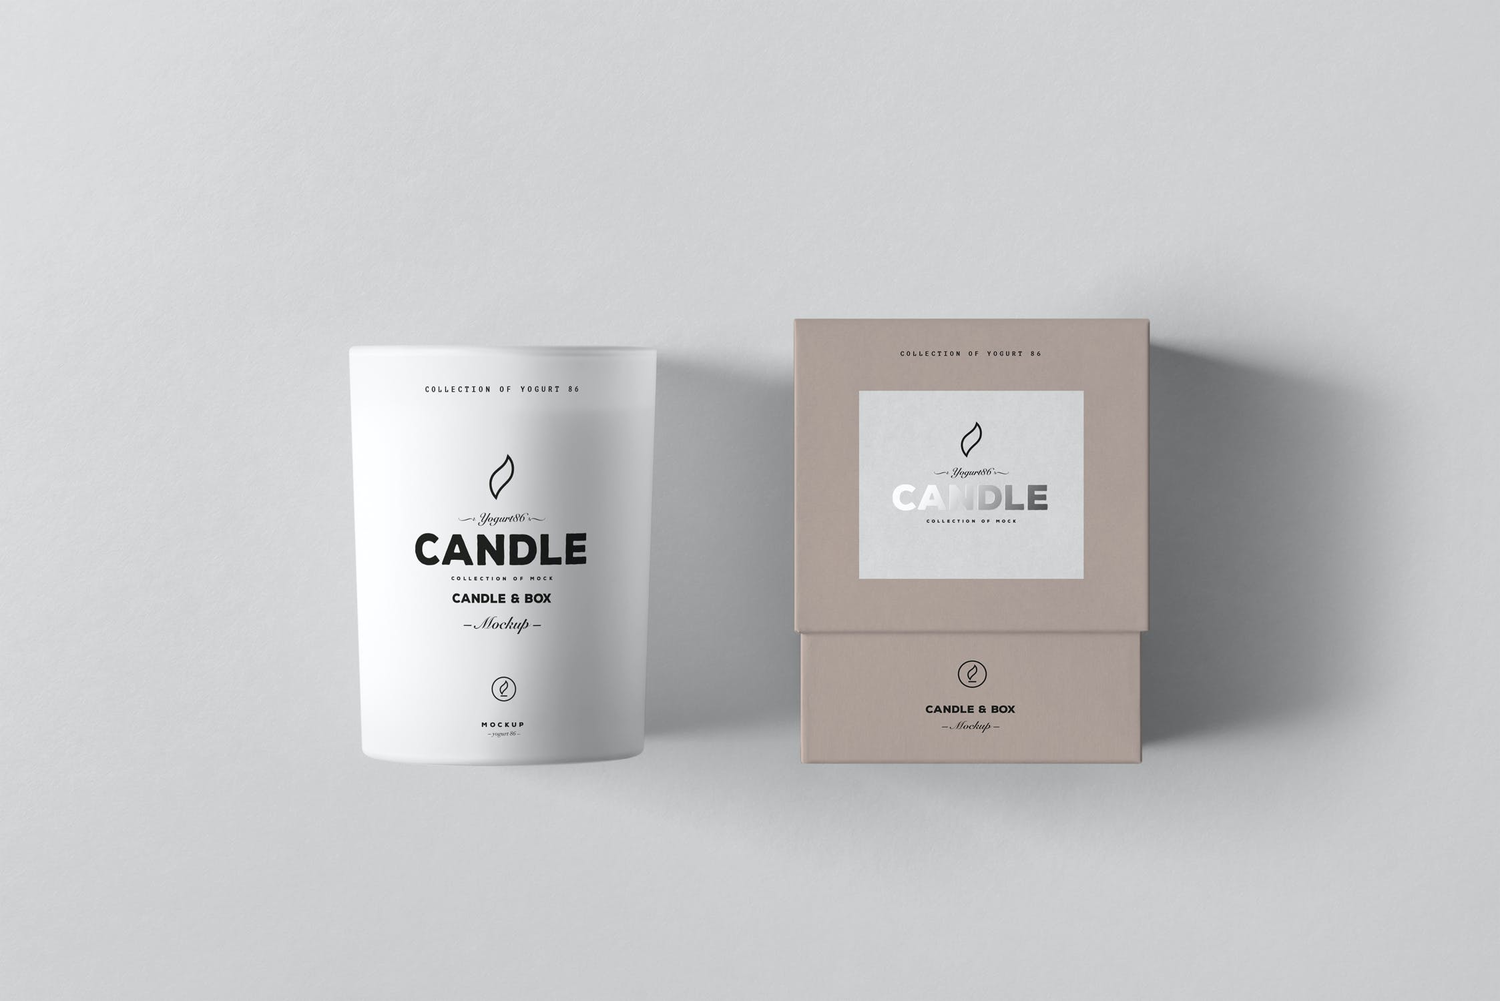 3624 7款香薰蜡烛产品品牌包装设计PS样机 Candle & Box Mock-up